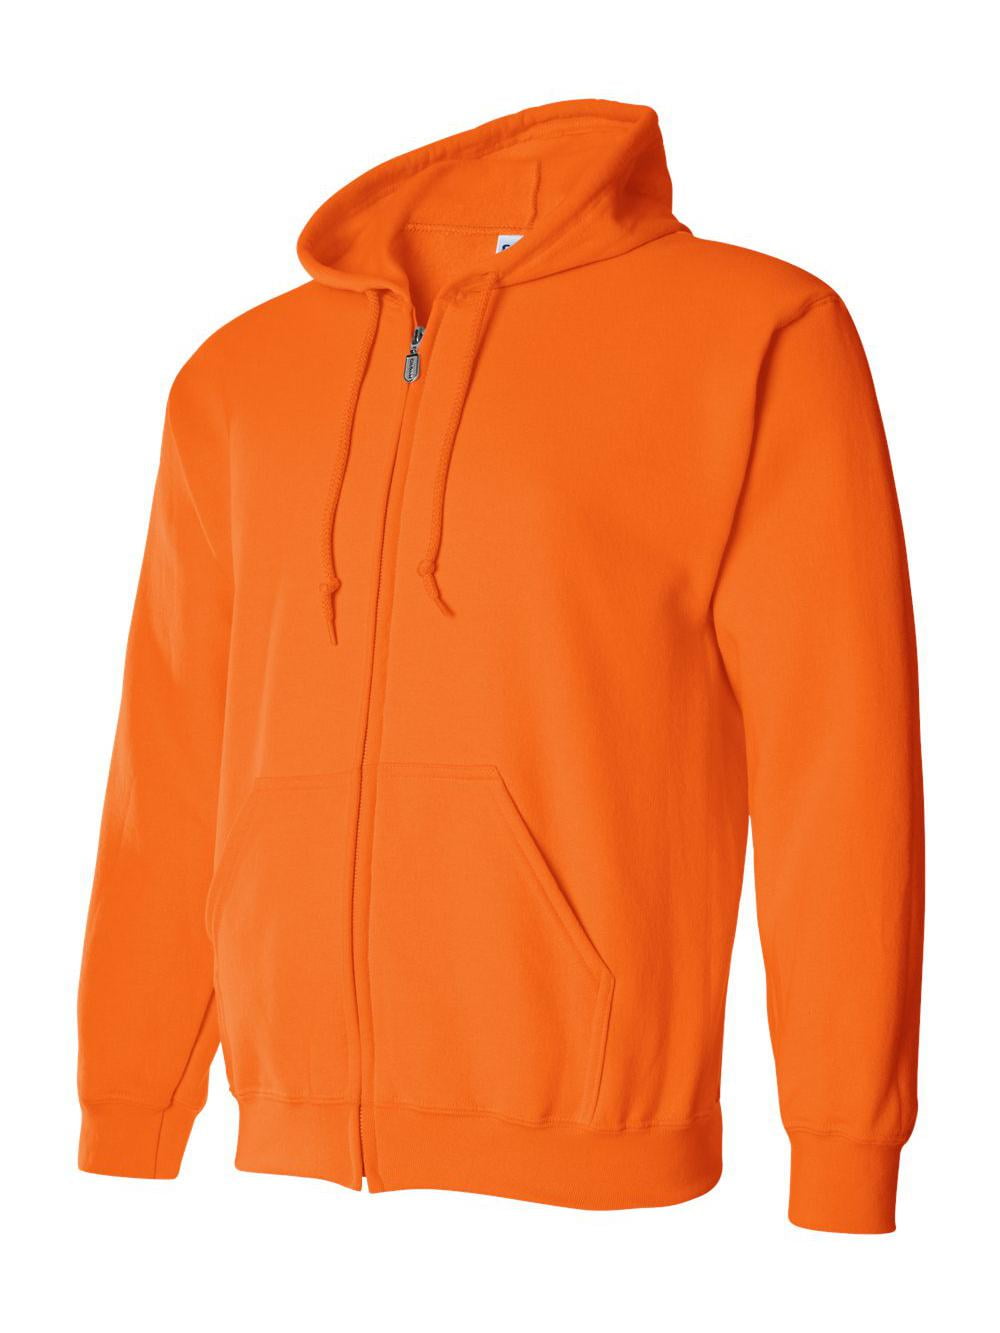 Gildan - Heavy Blend Full-Zip Hooded Sweatshirt - 18600 - Walmart.com